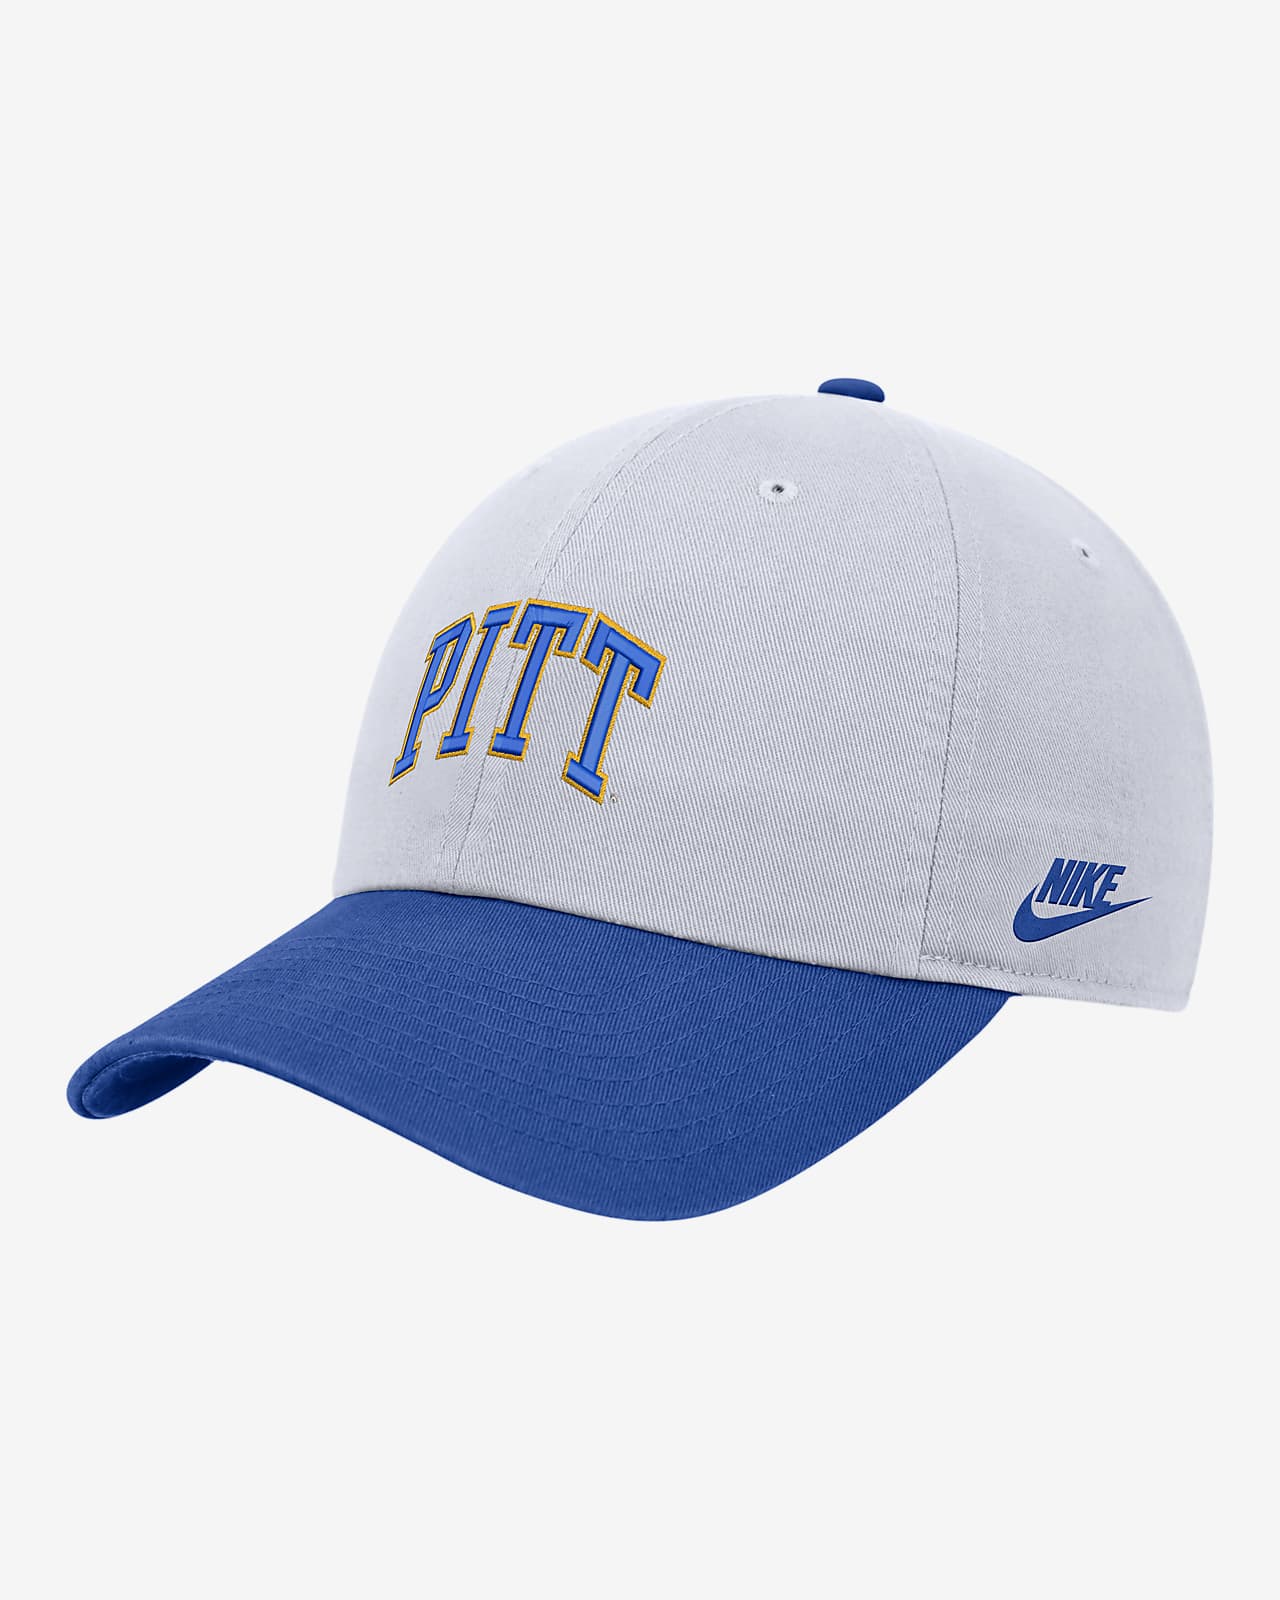 Pitt Nike College Campus Cap